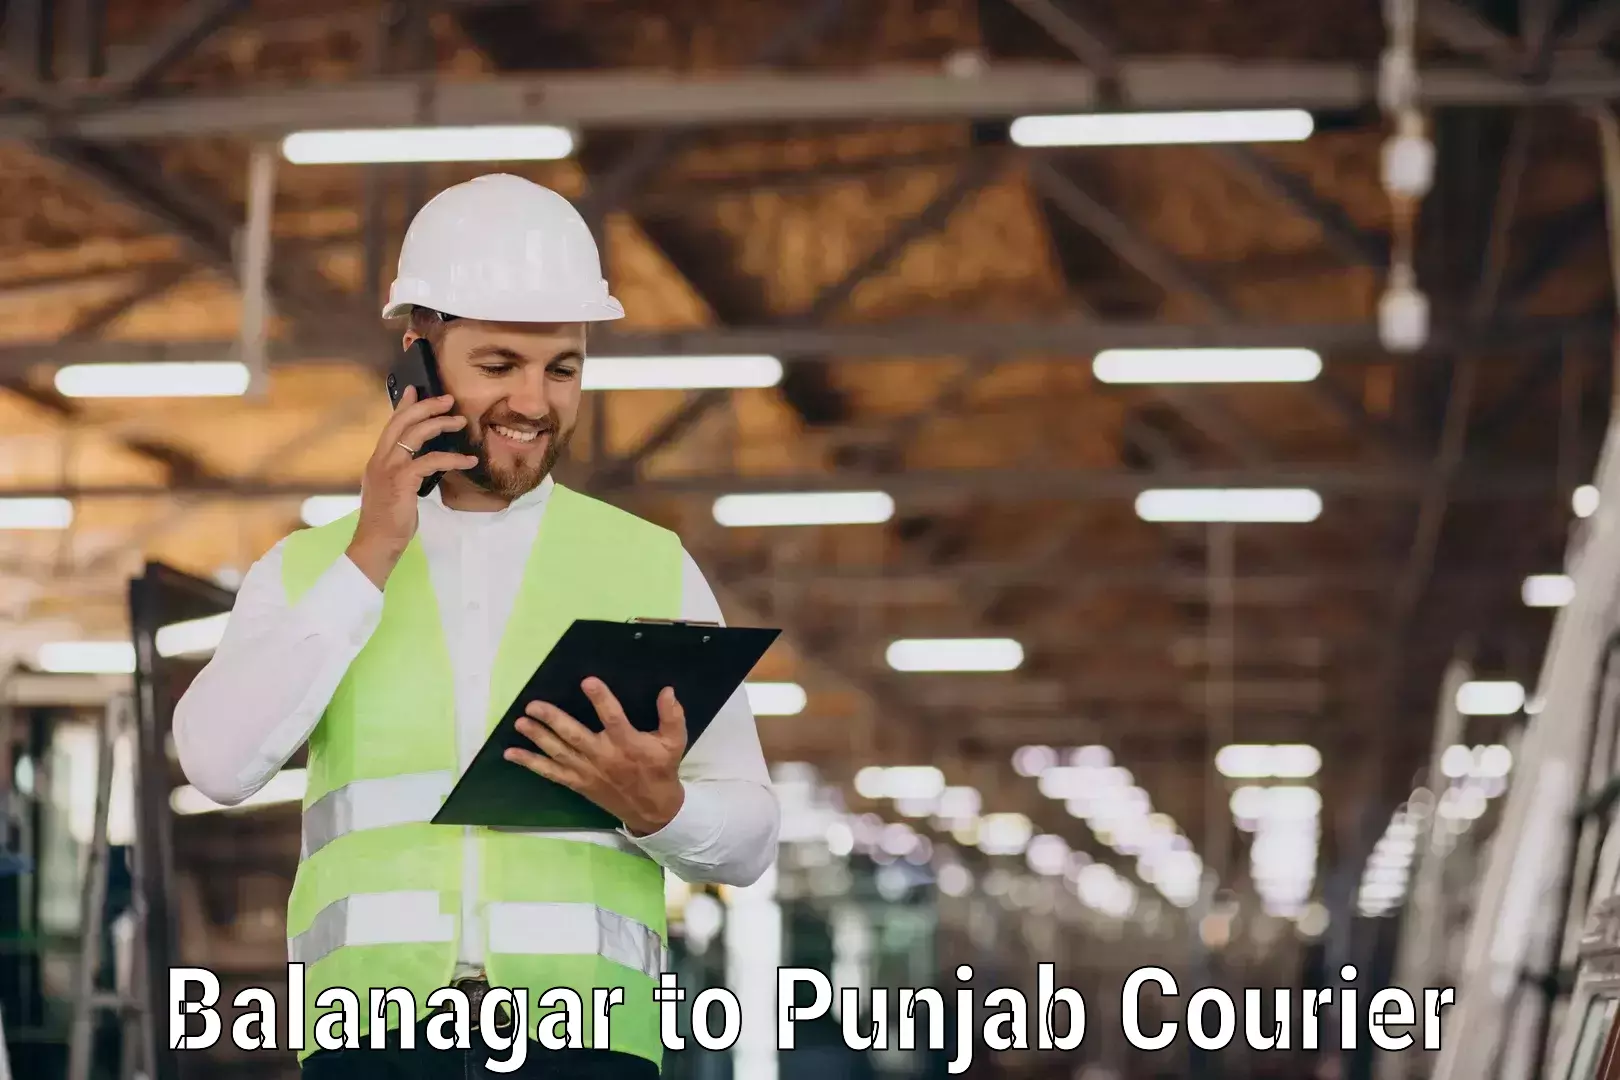 Advanced courier platforms Balanagar to Moga